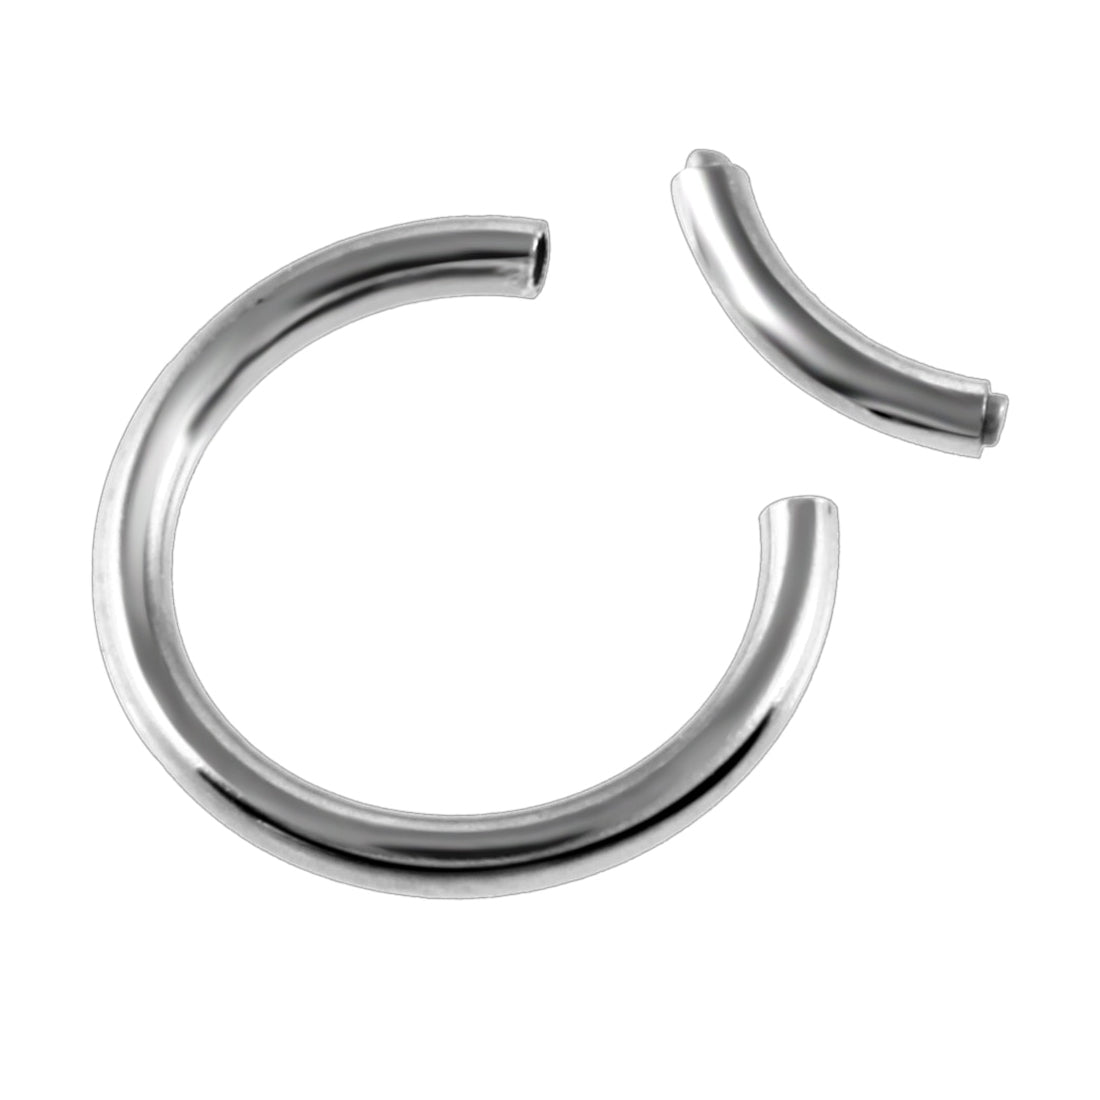 Segment ring 1.2mm (Steel 316L)